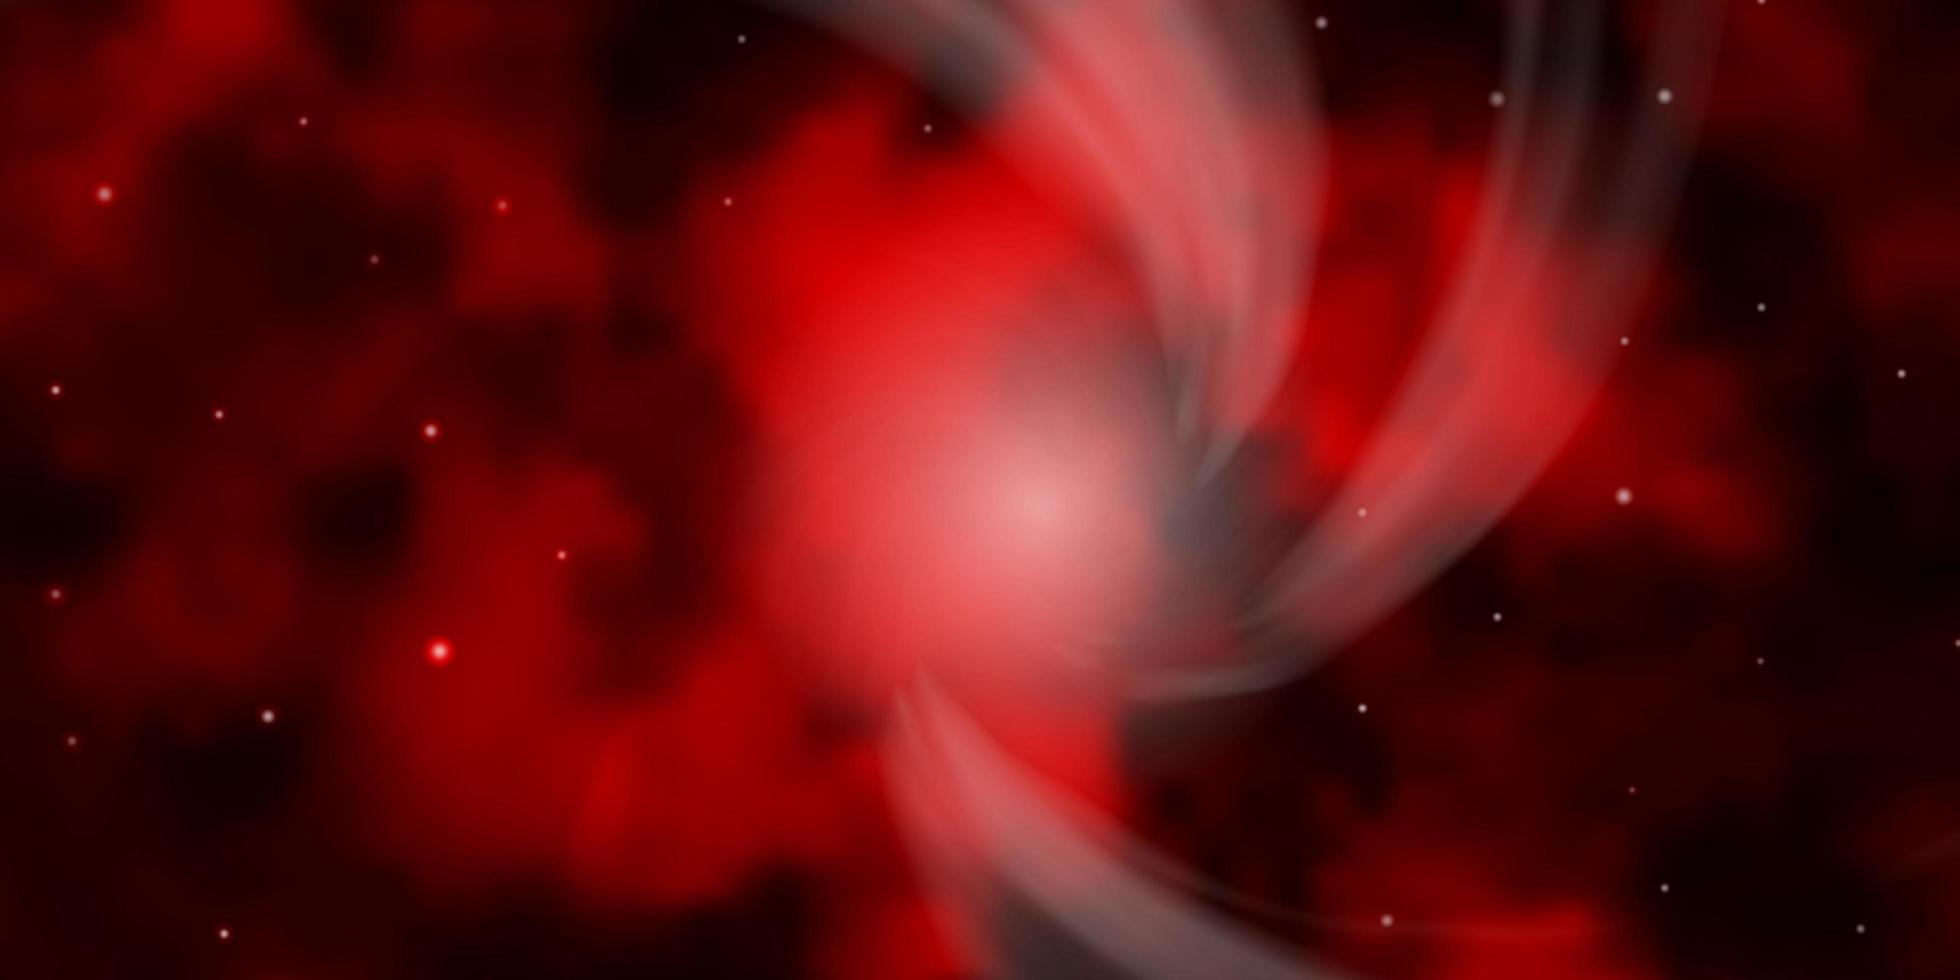 Fondo de vector rojo oscuro con estrellas pequeñas y grandes.